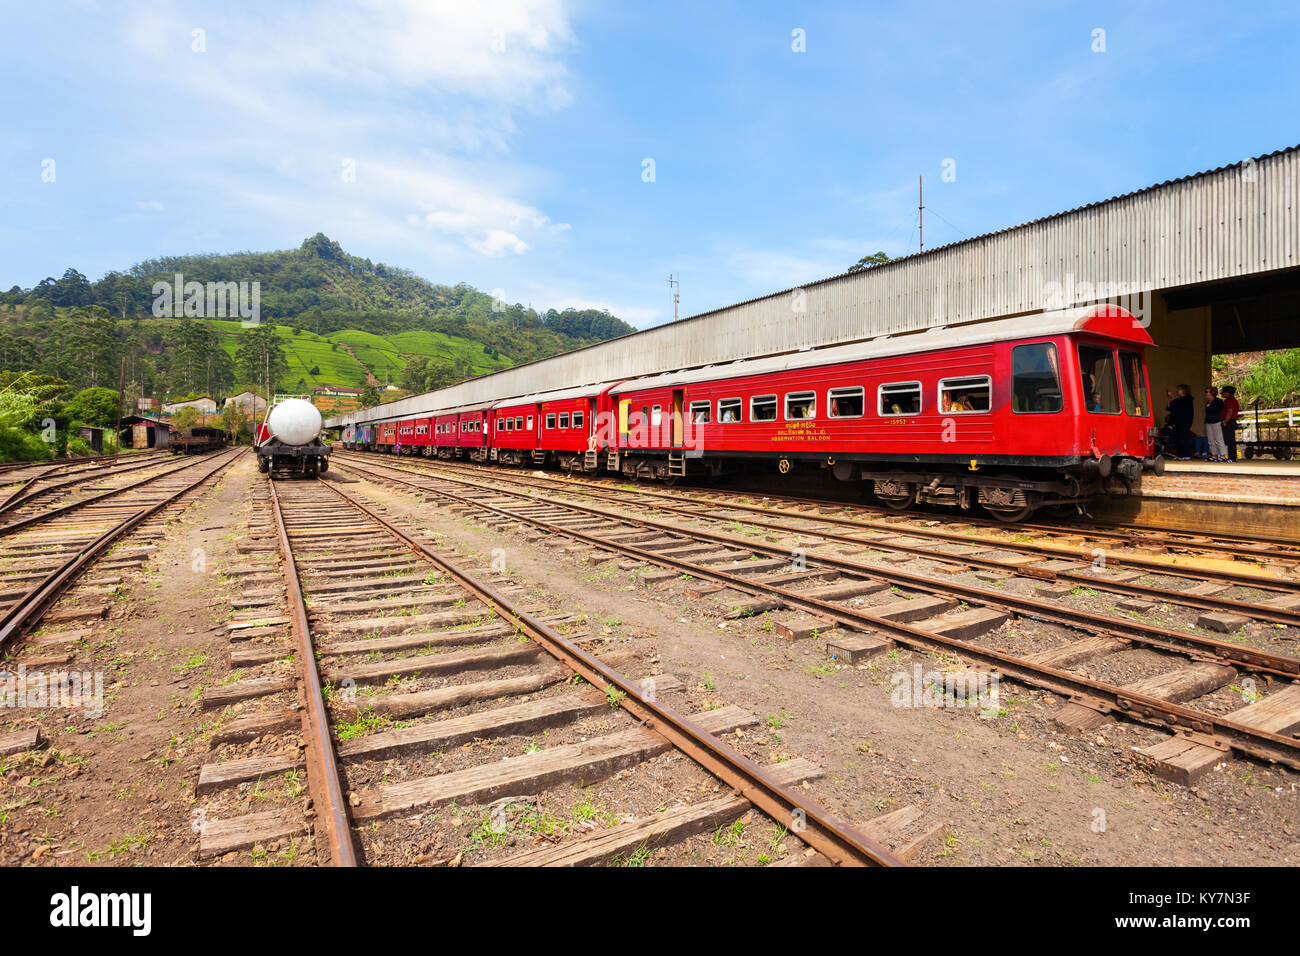 NUWARA ELIYA, SRI LANKA - FEBRUARY 22, 2017: Train at the Nanu Oya railway station near Nuwara Eliya, Sri Lanka. It is the main railway station in Nuw Stock Photo